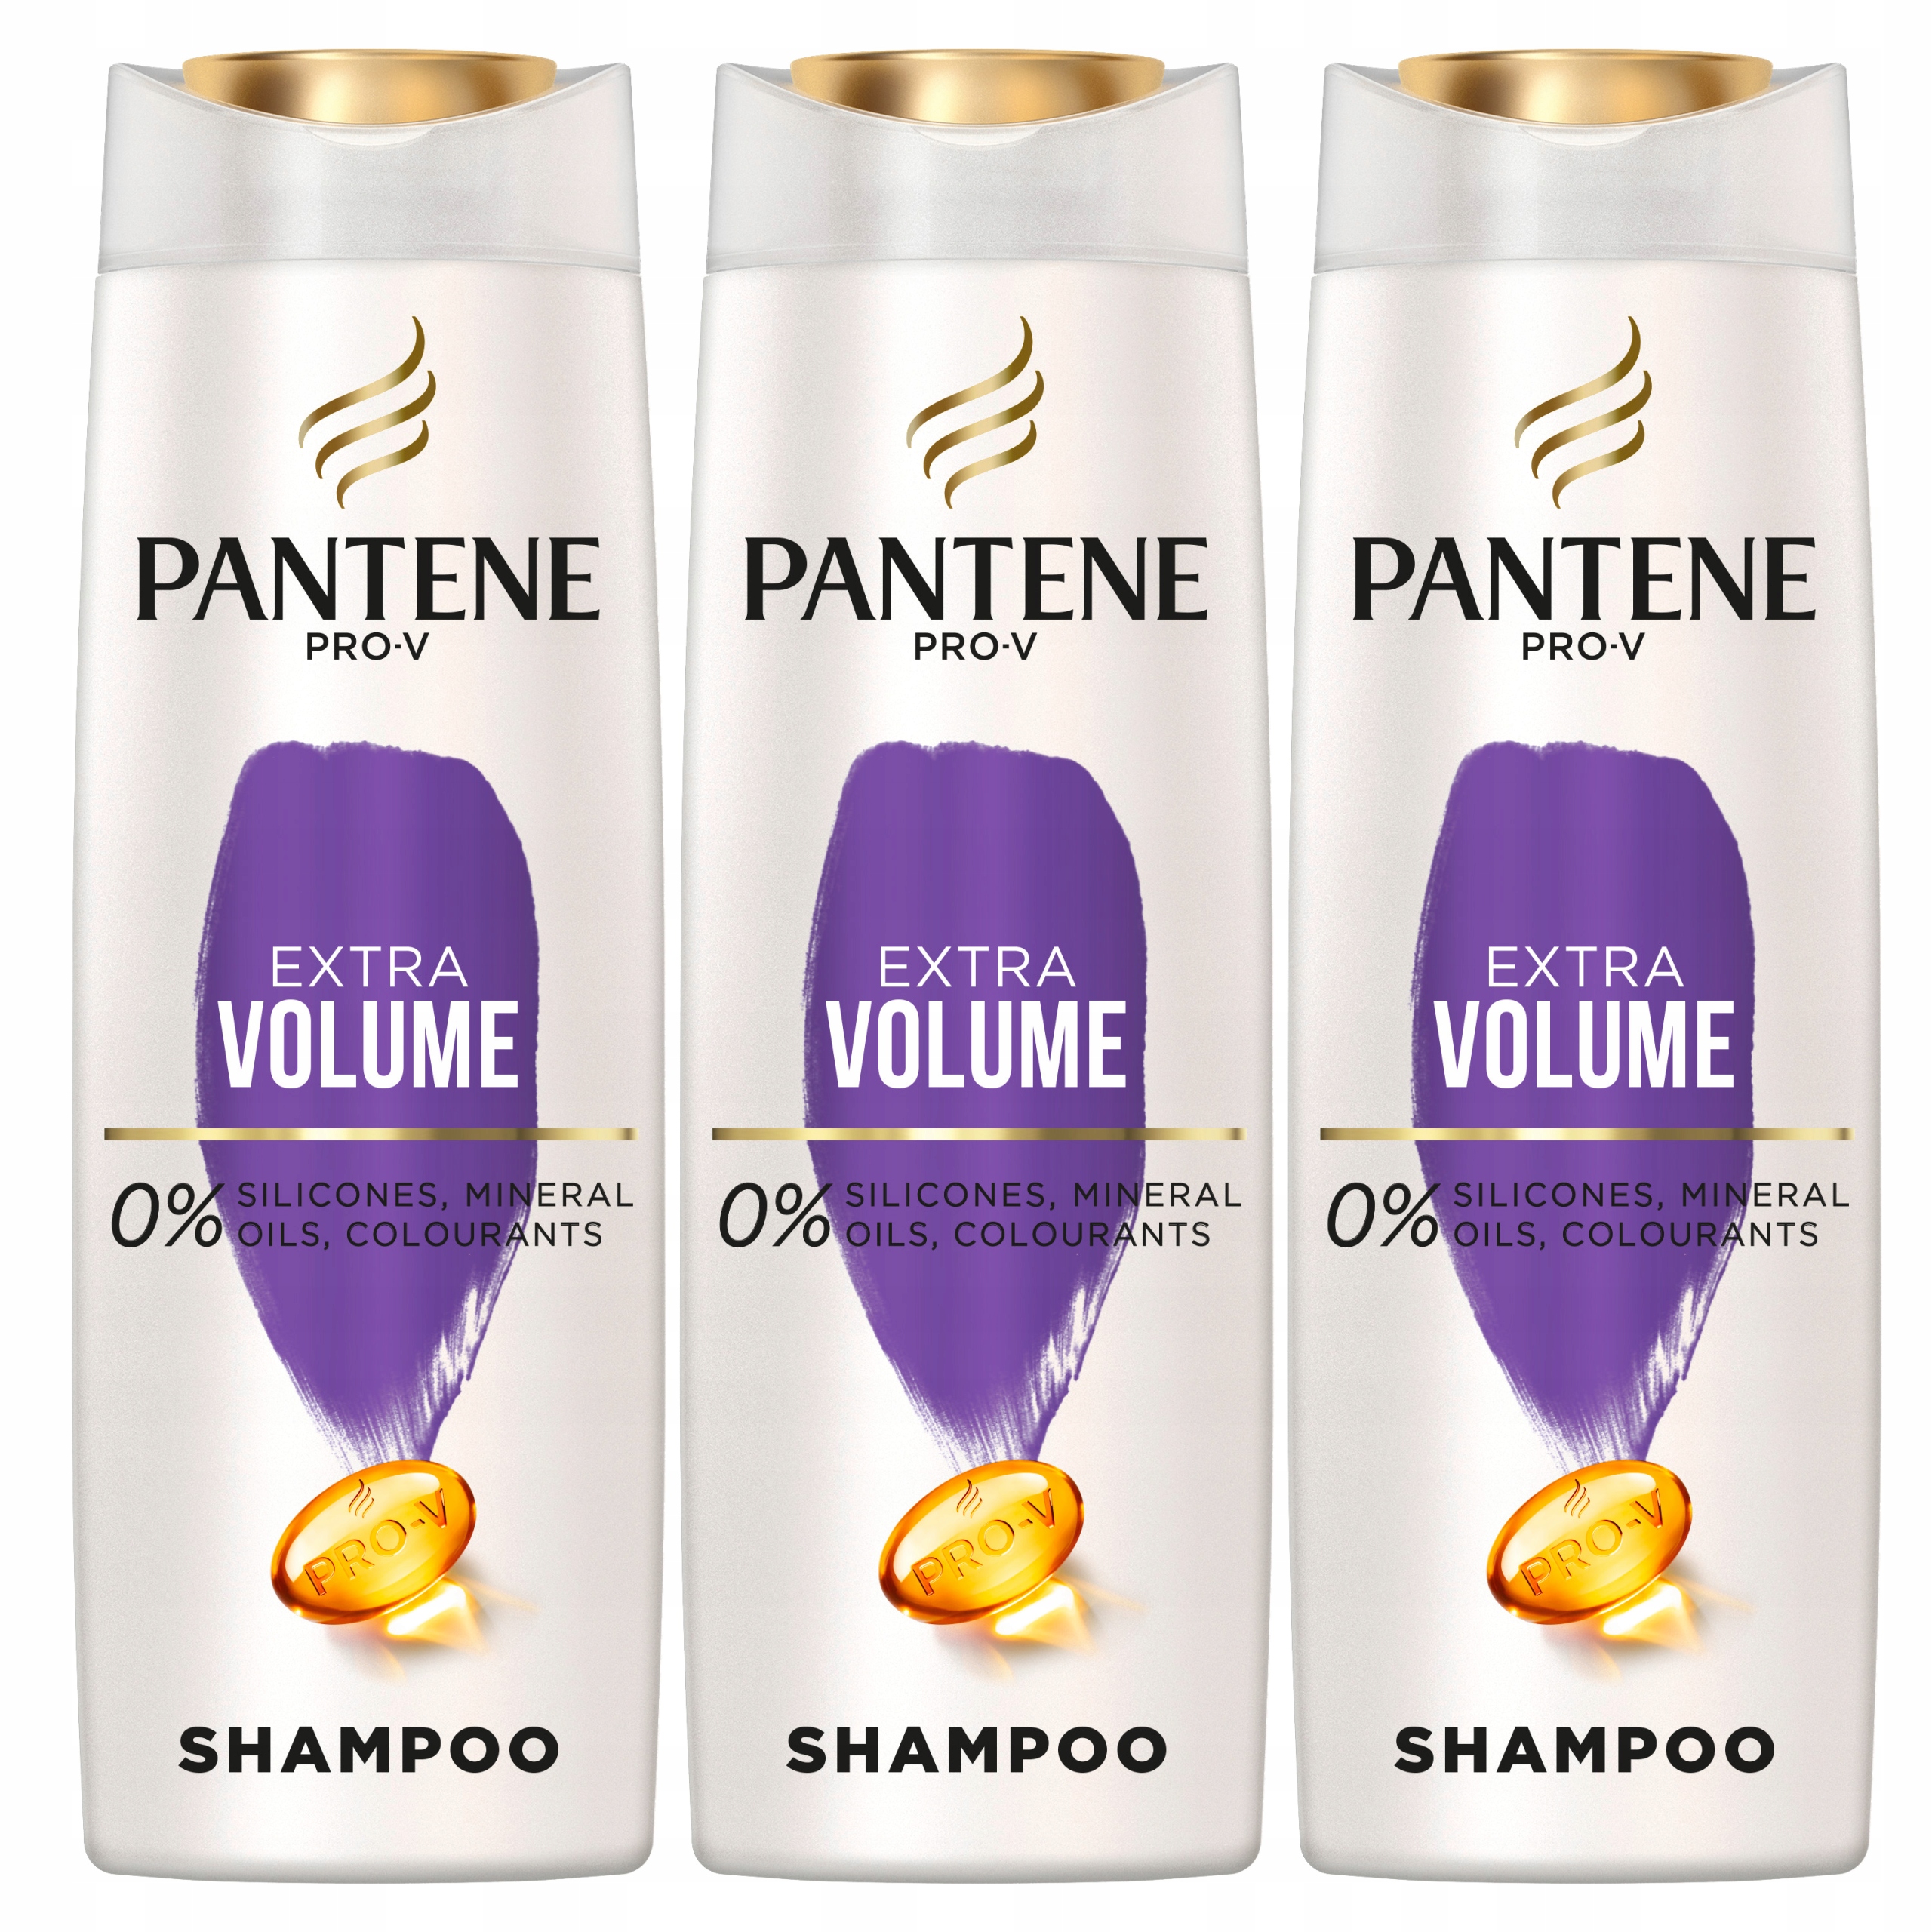 szampon do wlosow extra volume pantene prov